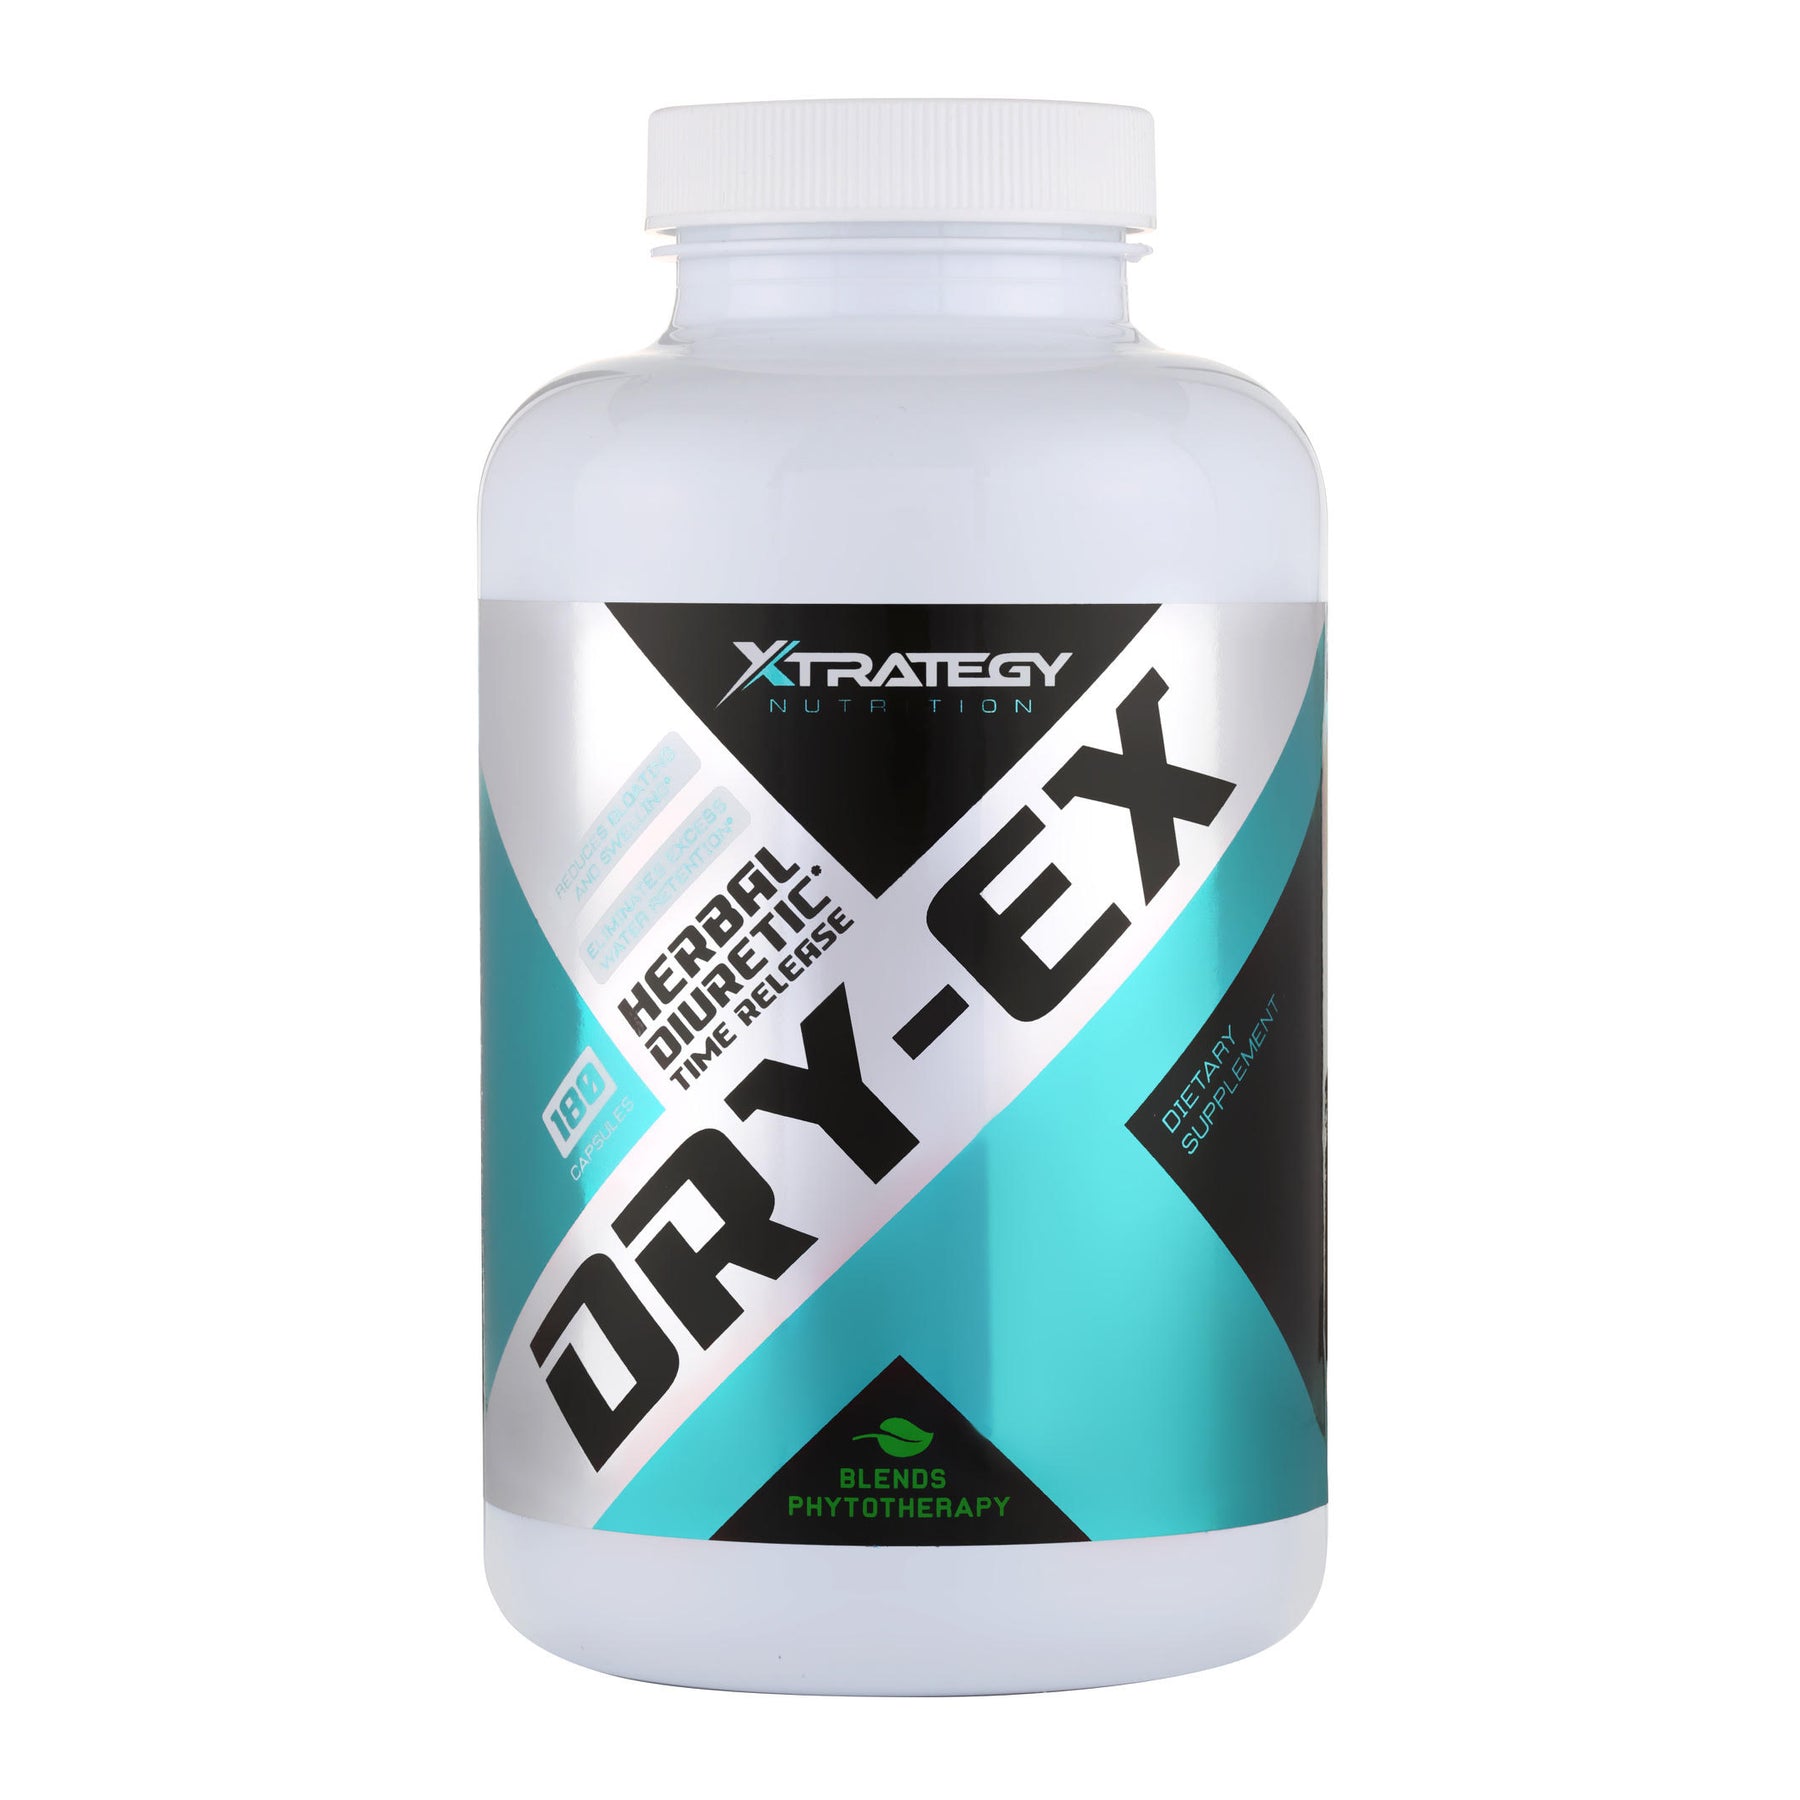 BRASIL- Dry-EX Xtrategy Nutrition - O melhor BLEND de ervas para